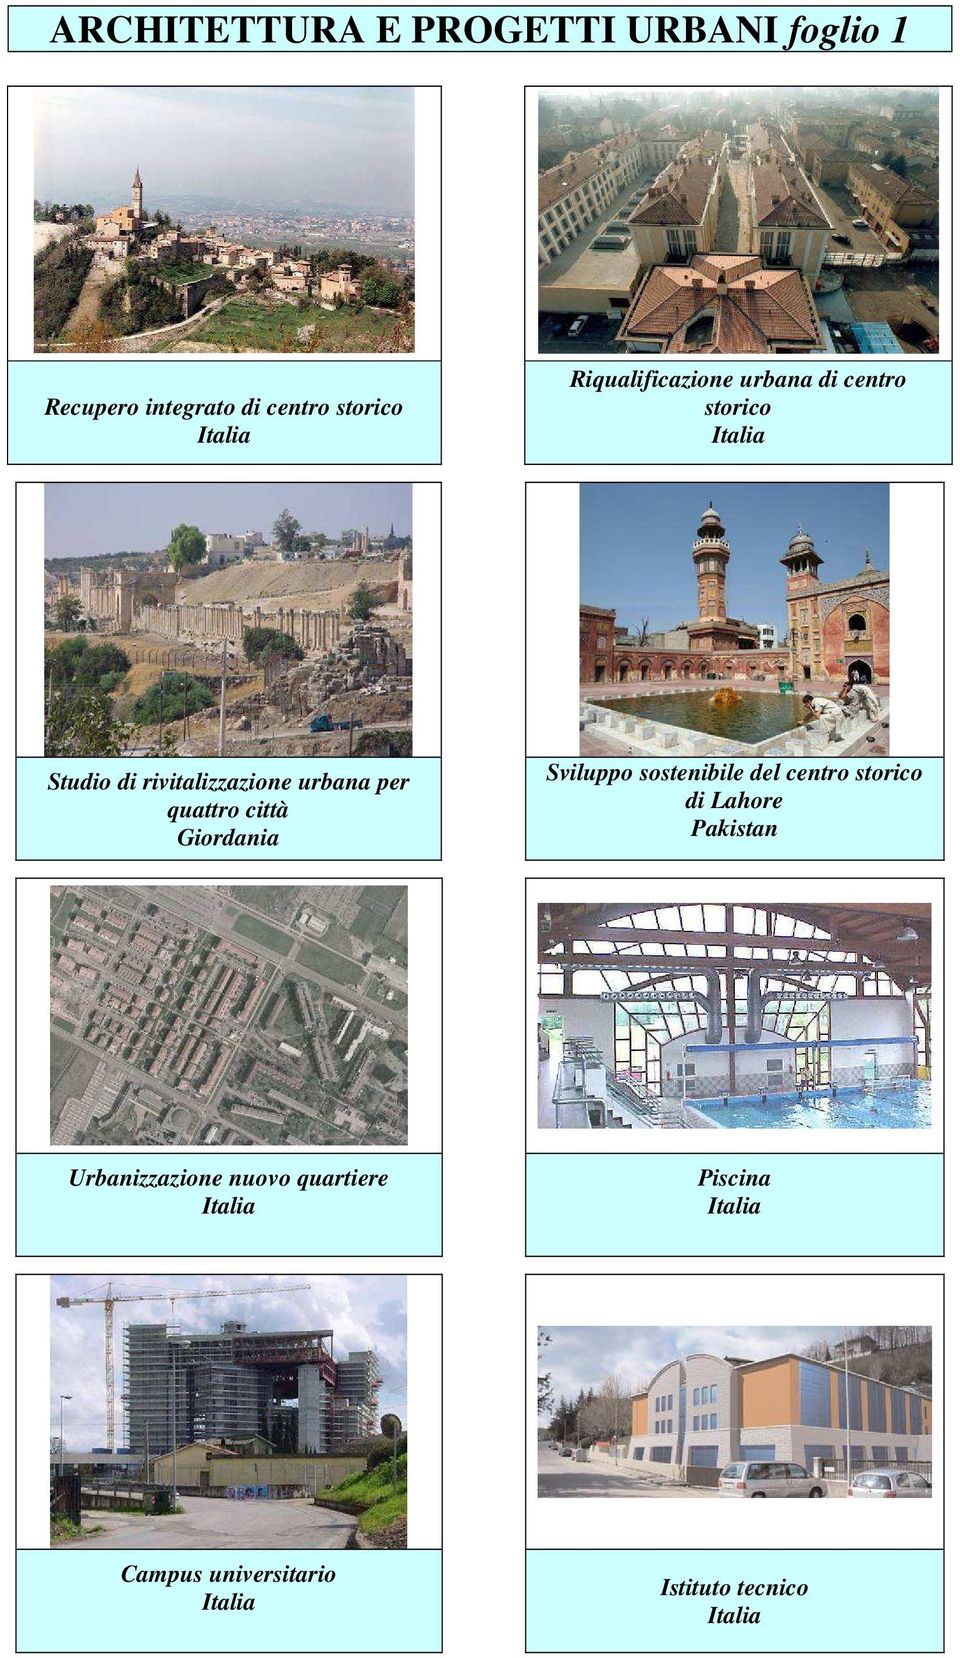 per quattro città Giordania Sviluppo sostenibile del centro storico di Lahore